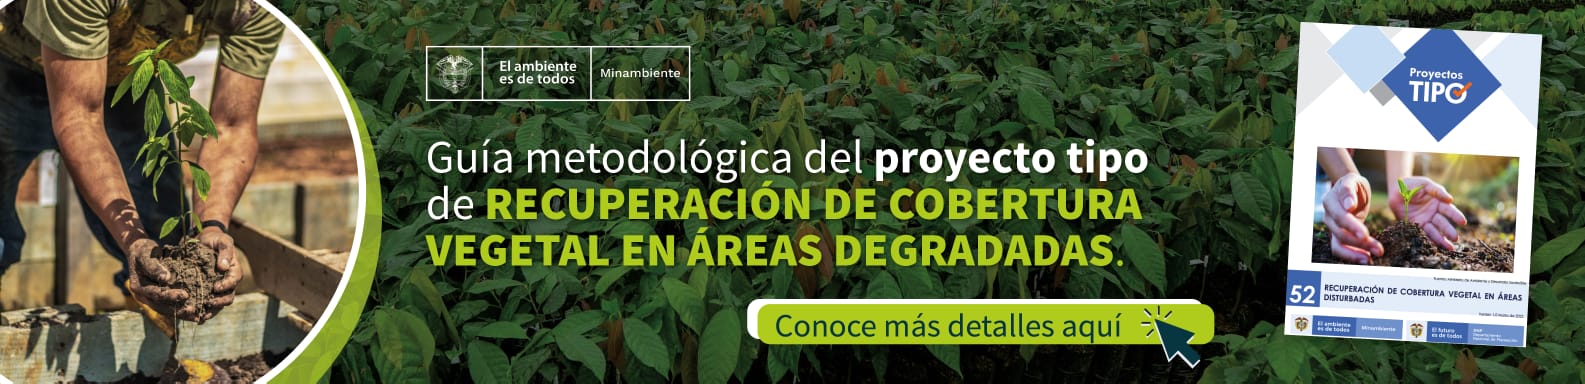 Guía metodológica del proyecto tipo de recuperación de cobertura vegetal